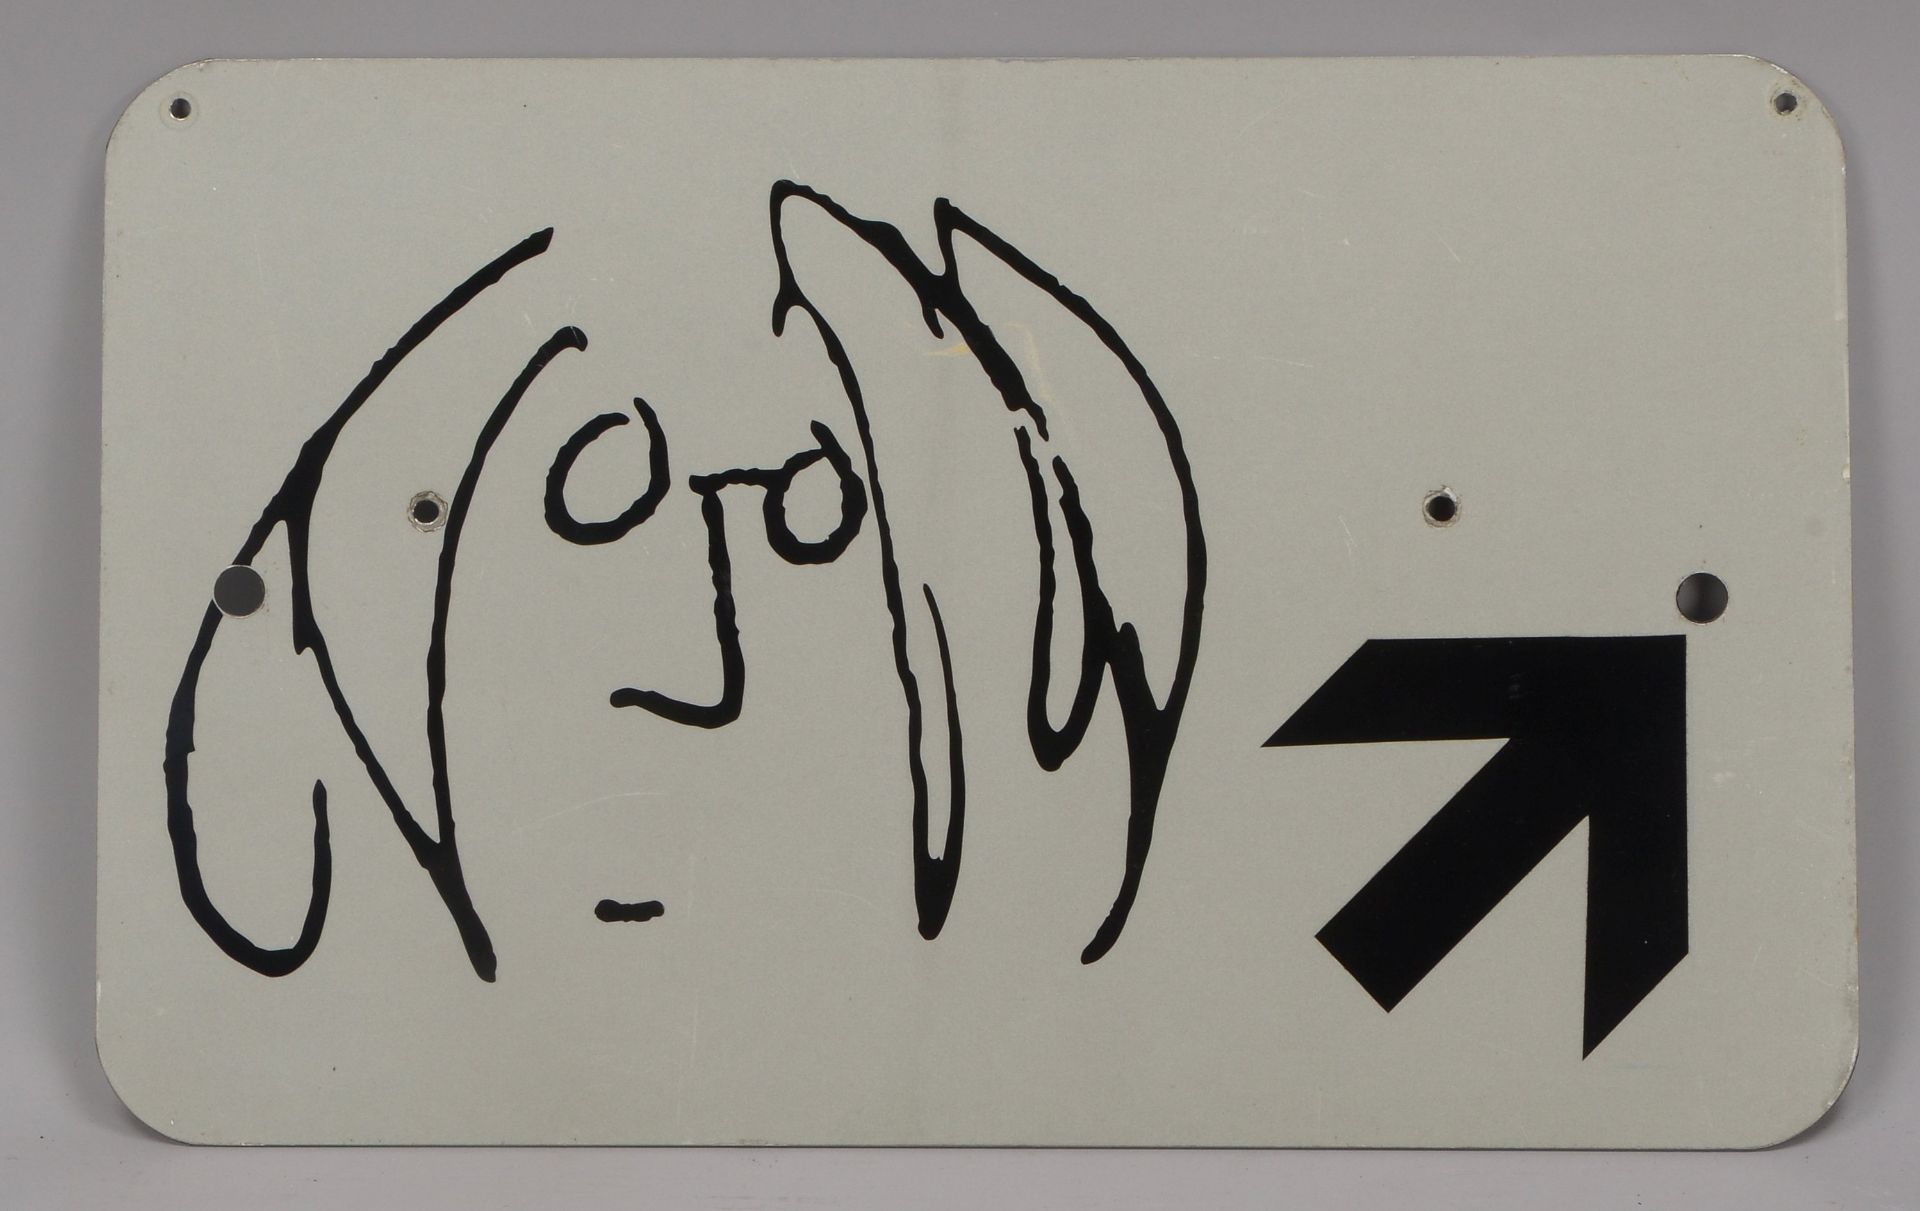 Museumstafel/Hinweisschild zu John Lennon-Ausstellung, auf Reflexfolie, mittig 4-fach zus&auml;tzlic